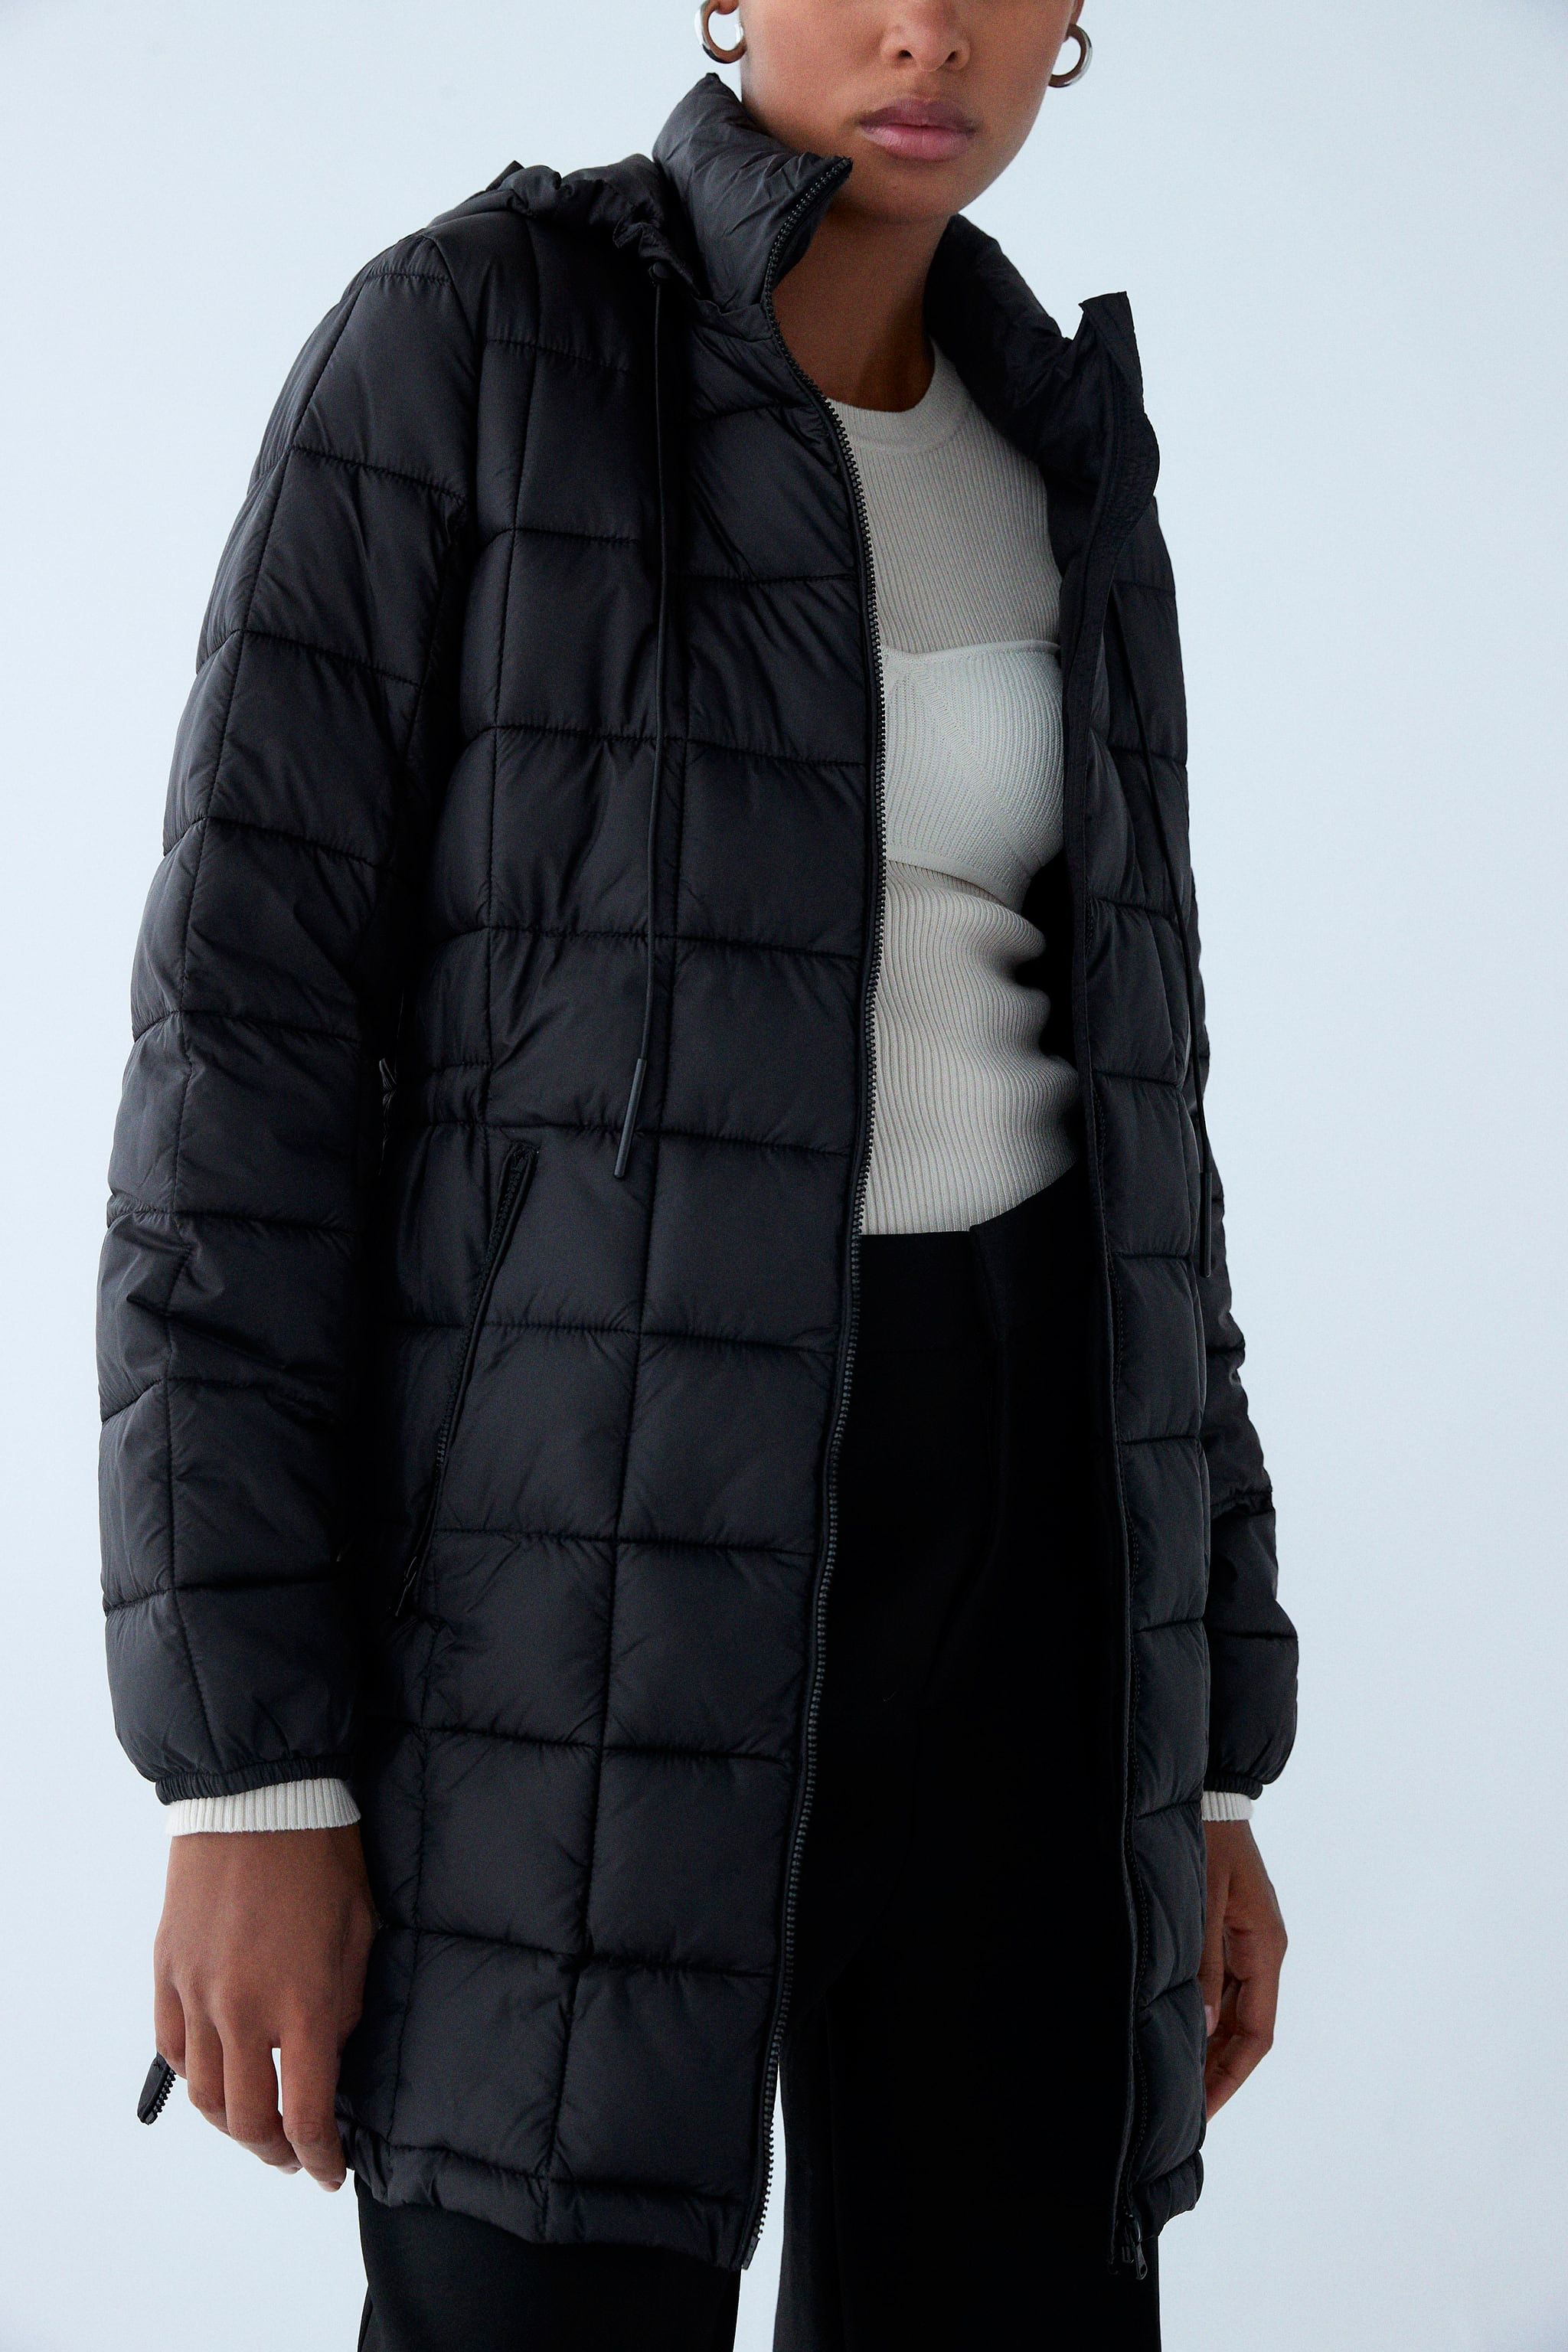 Corbata esposas transmisión El abrigo plumífero negro sostenible de Zara que arrasa en ventas